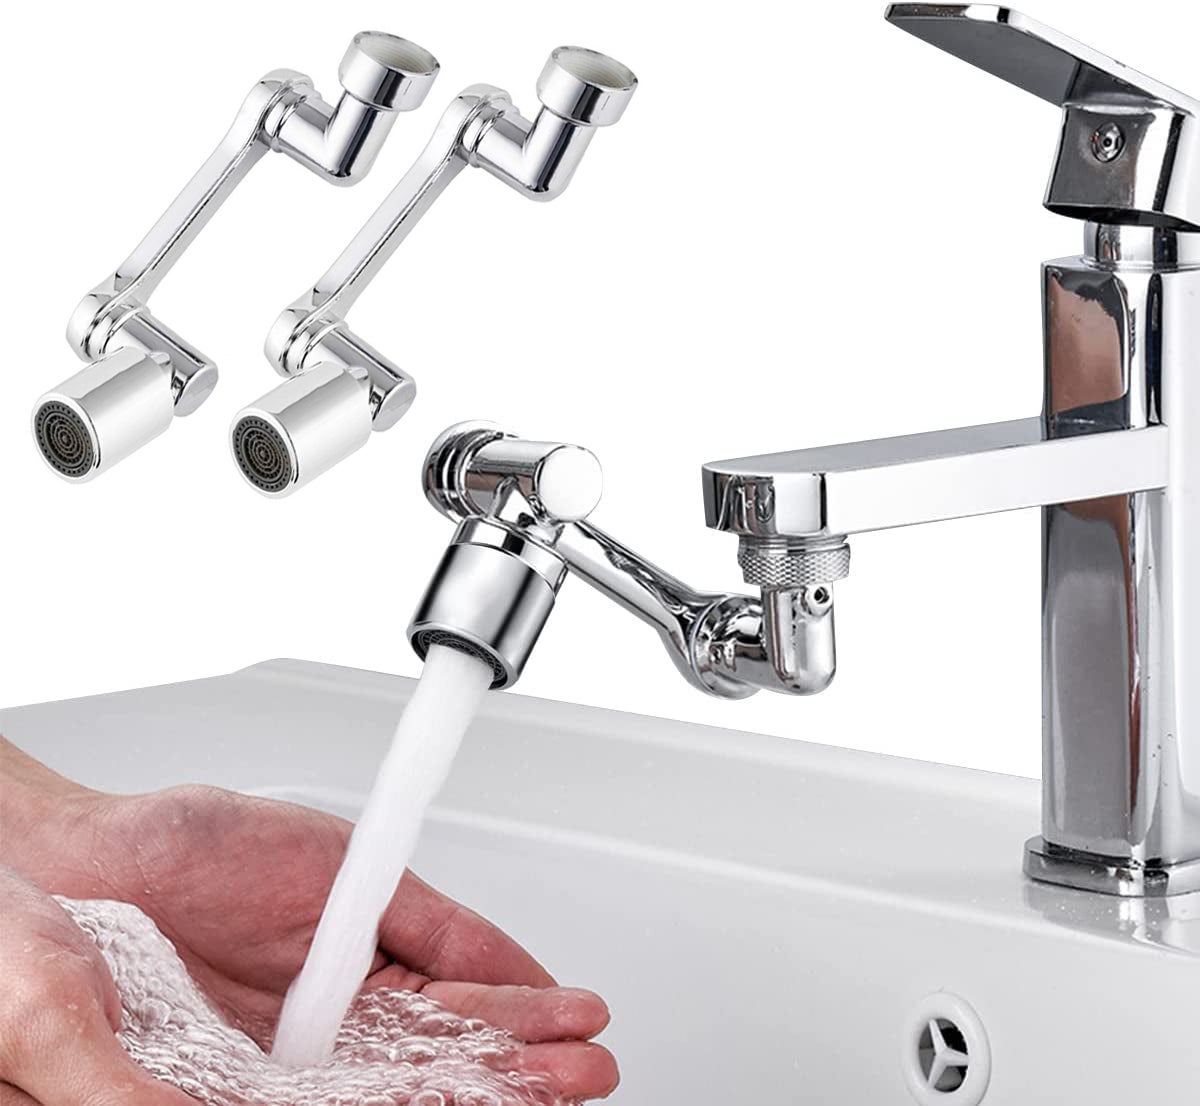 Mousseur robinet : Economiser l'eau du lavabo